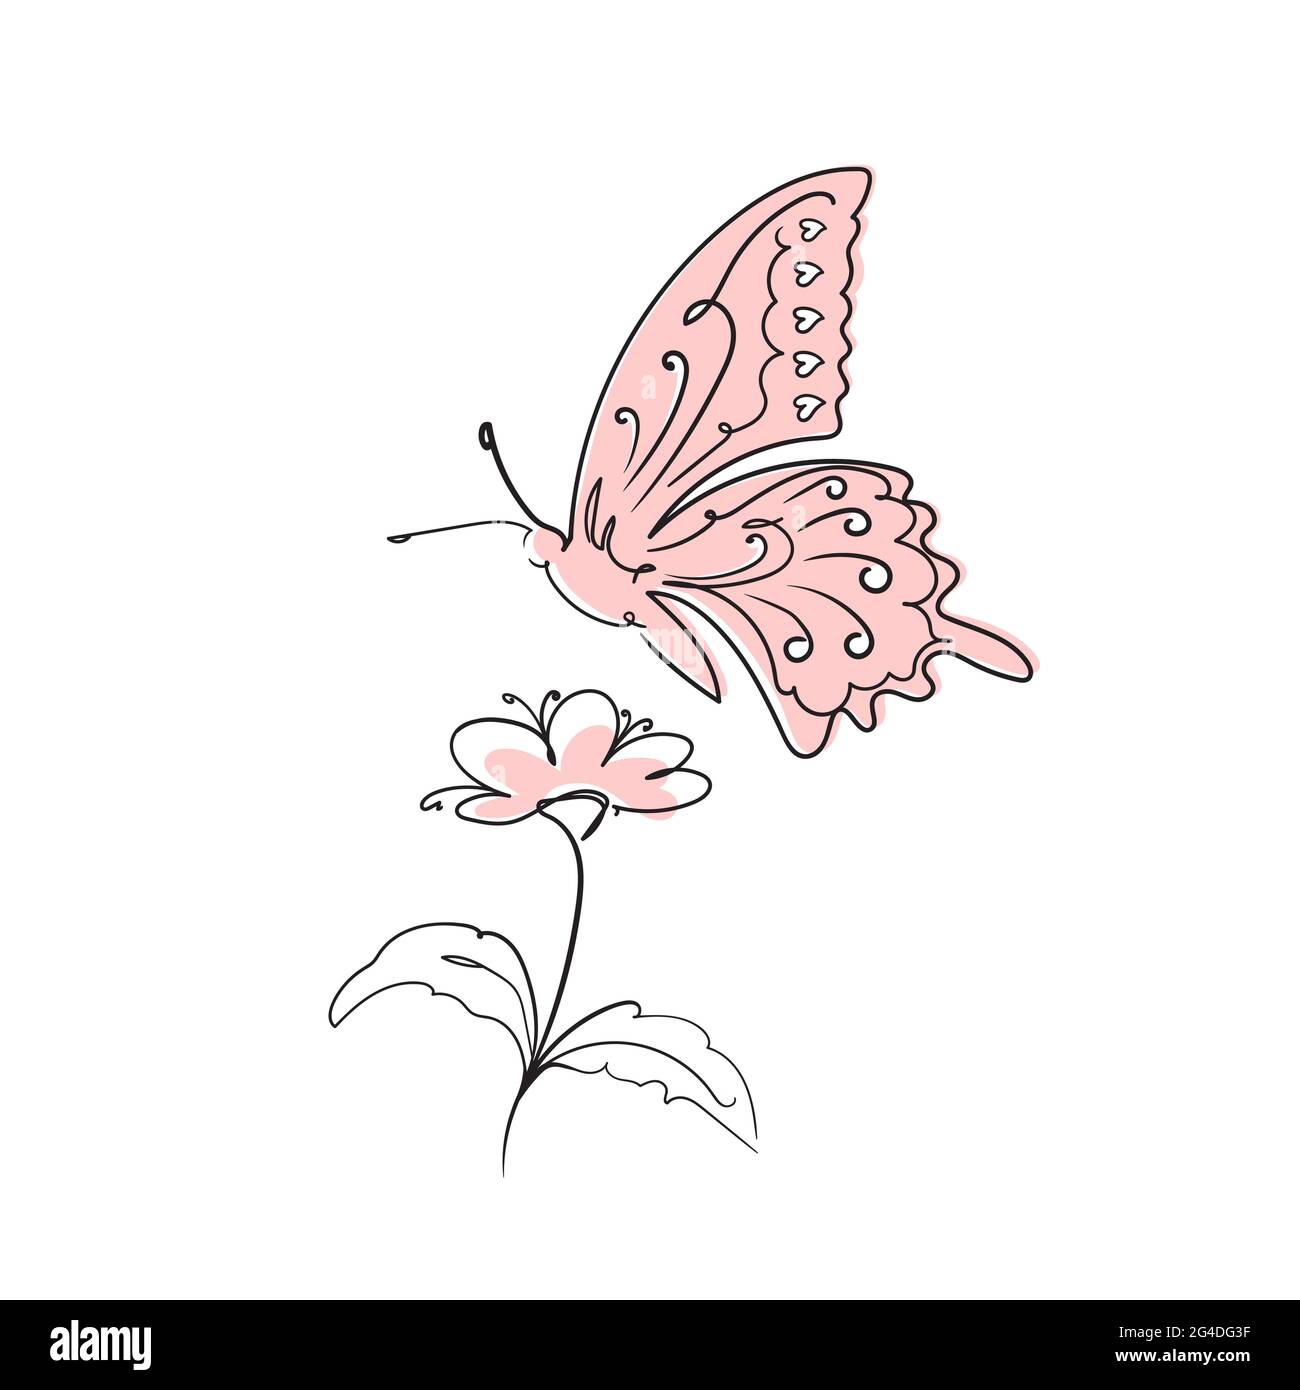 Farfalla linea continua surreale e flower.Collect Nectar.Stock illustrazione vettoriale isolato su sfondo bianco. Illustrazione Vettoriale